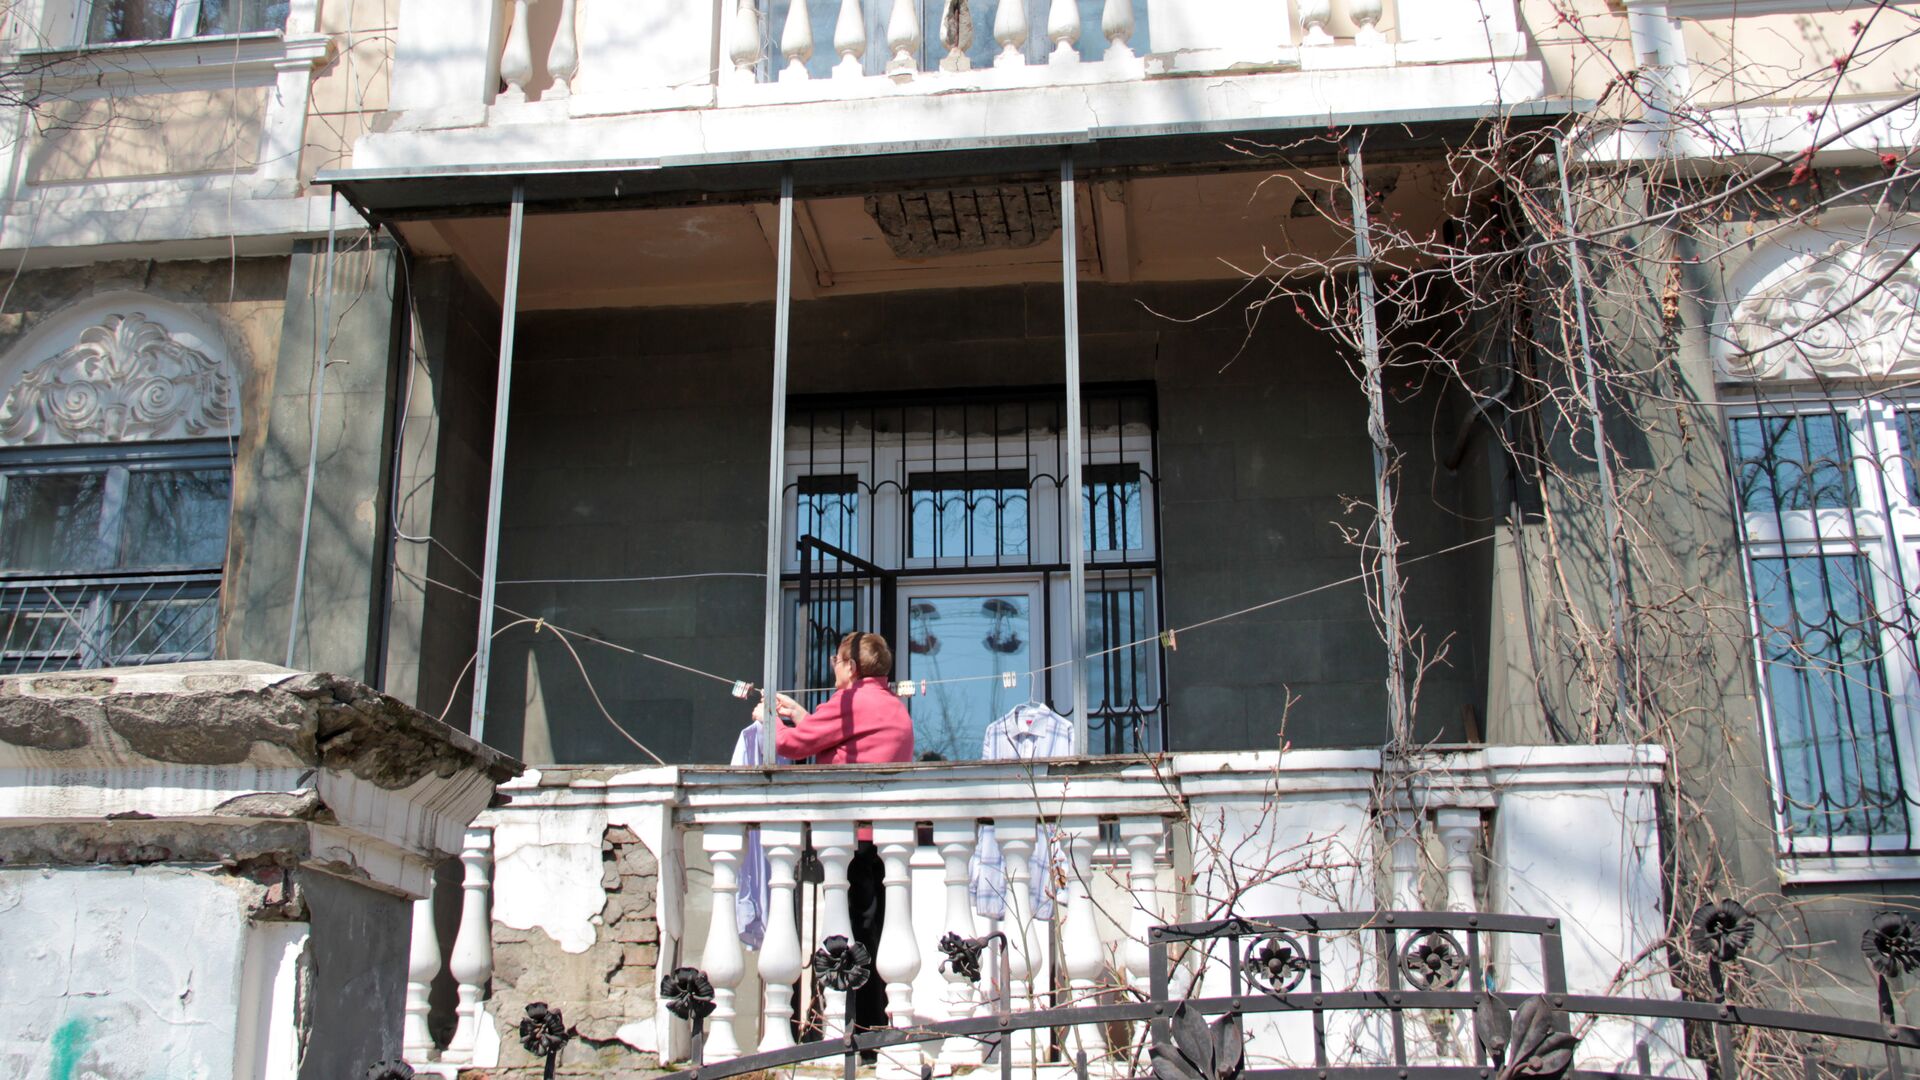 Центр города. Женщина развешивает белье на балконе старинной усадьбы. - Sputnik Грузия, 1920, 22.08.2021